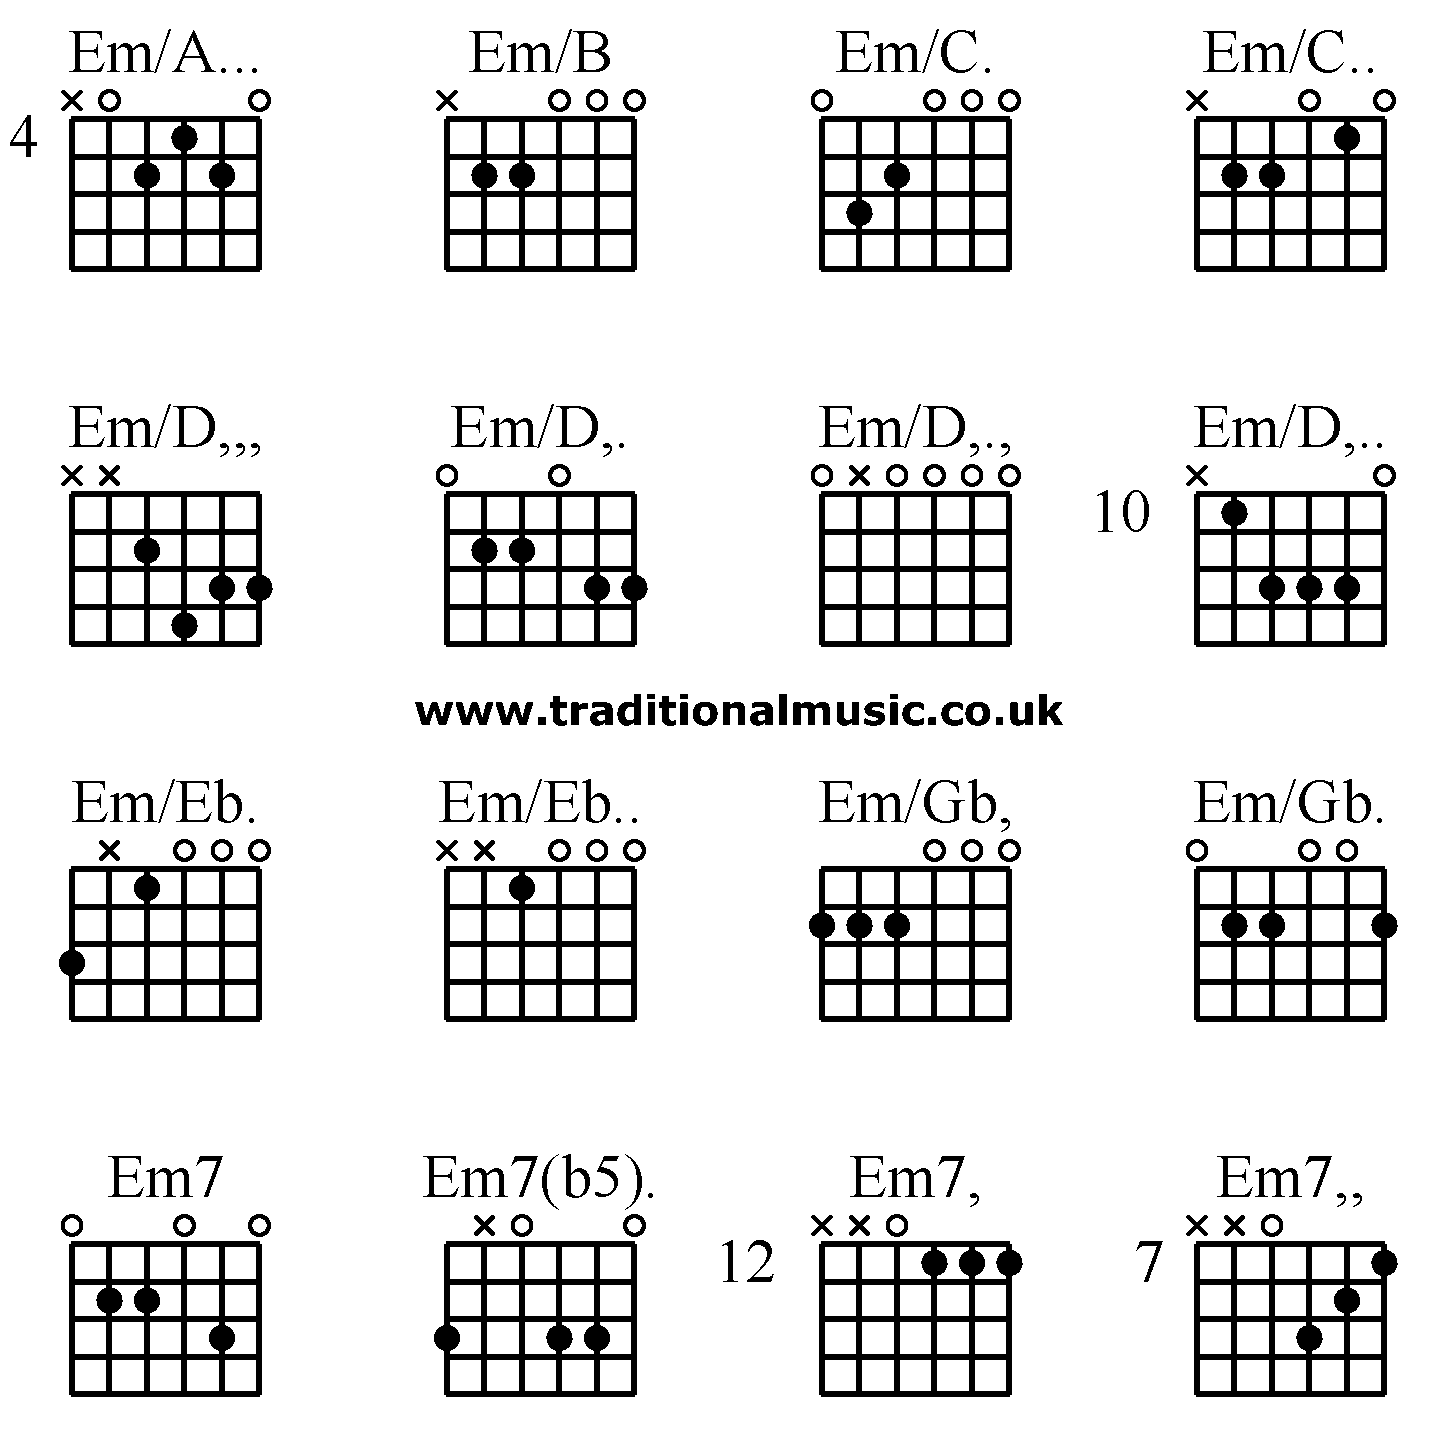 Advanced guitar chords:Em/A... Em/B Em/C. Em/C.. Em/D,,, Em/D,. Em/D,., Em/D,.. Em/Eb. Em/Eb.. Em/Gb, Em/Gb. Em7 Em7(b5). Em7, Em7,,